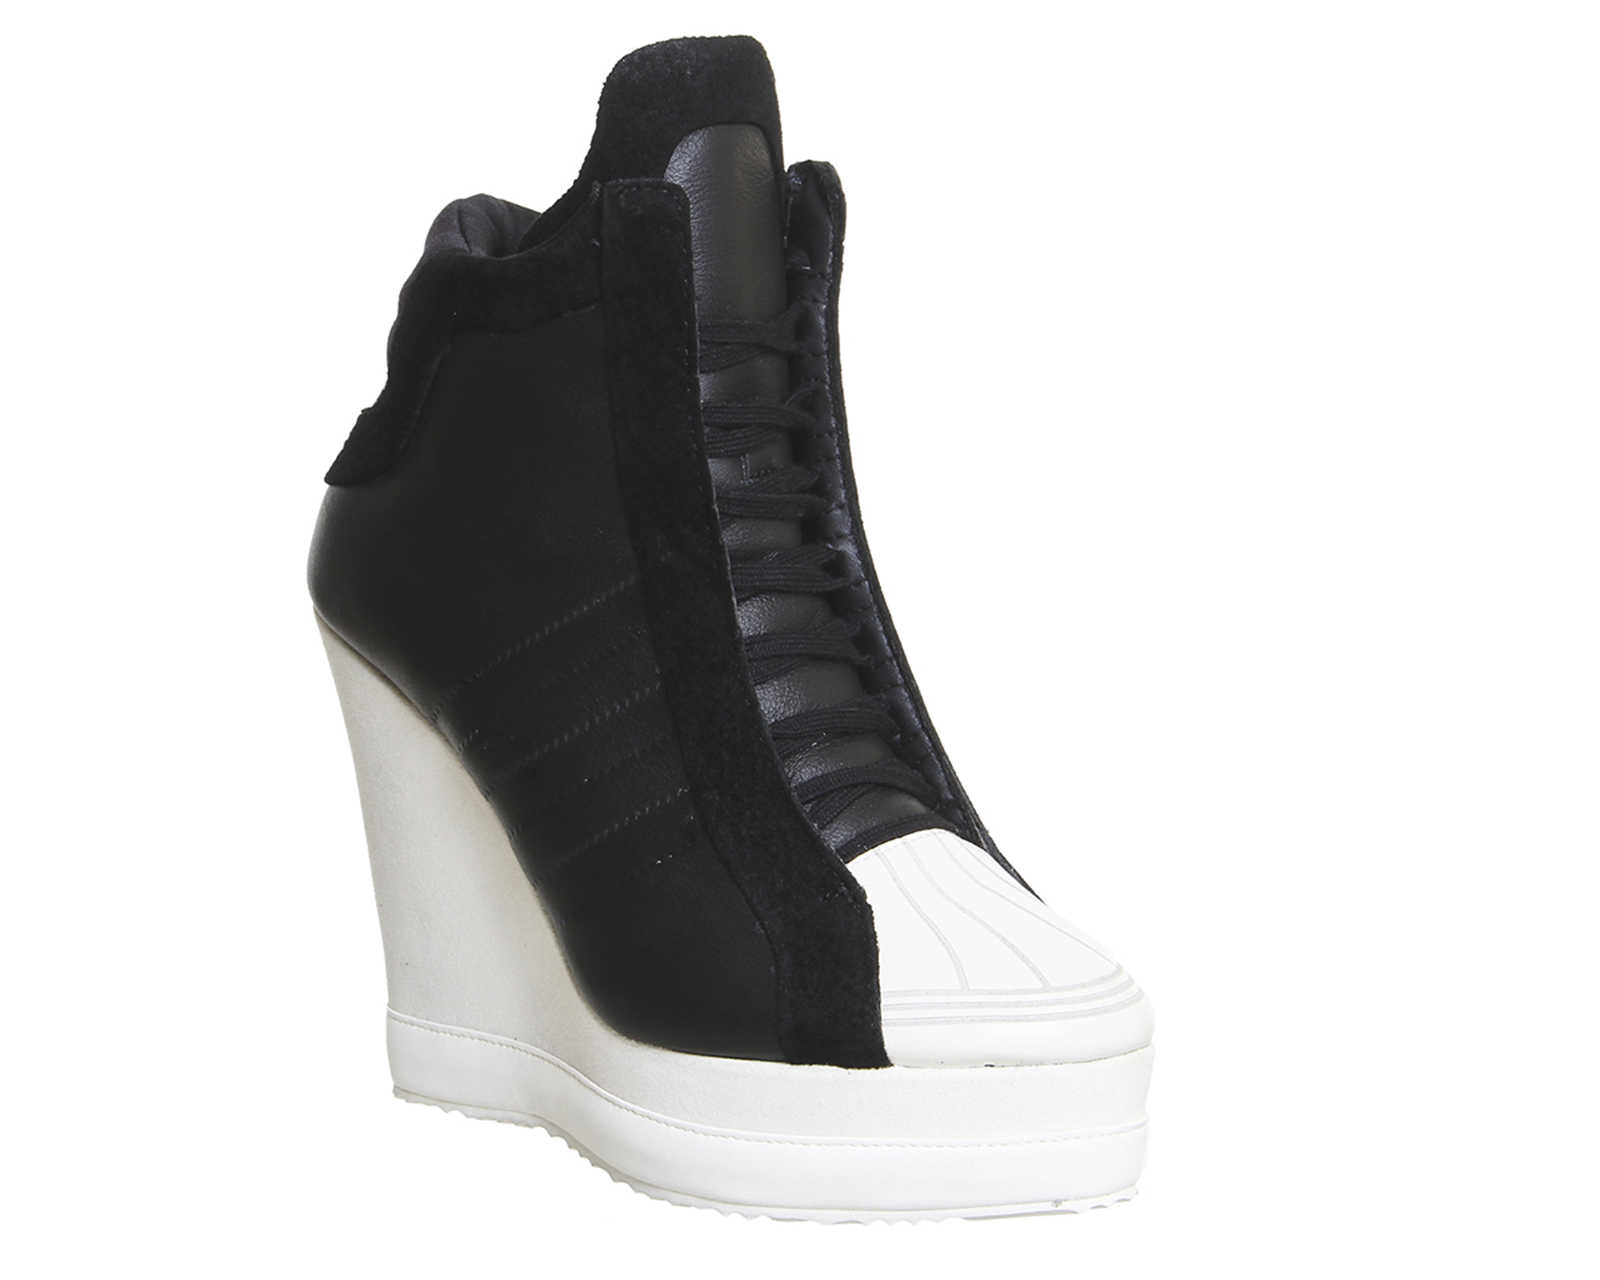 adidas Originals Leather Superstar Wedge in Black (White) - Lyst